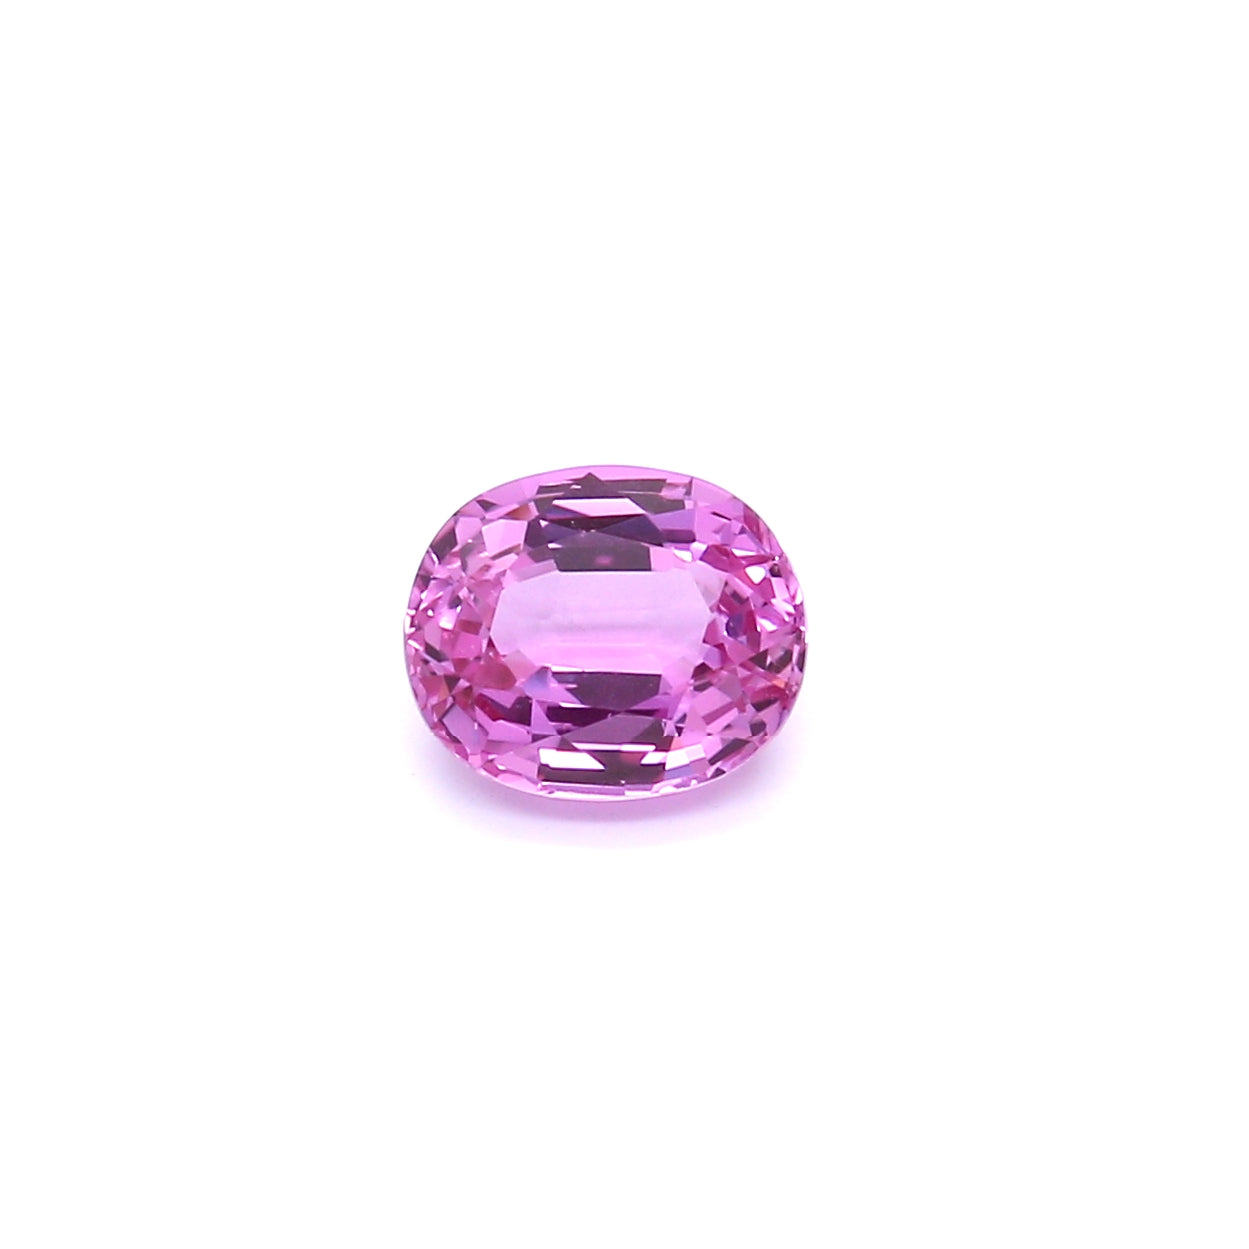 1.47ct Pink, Oval Sapphire, No Heat, Sri Lanka - 7.10 x 5.96 x 3.65mm